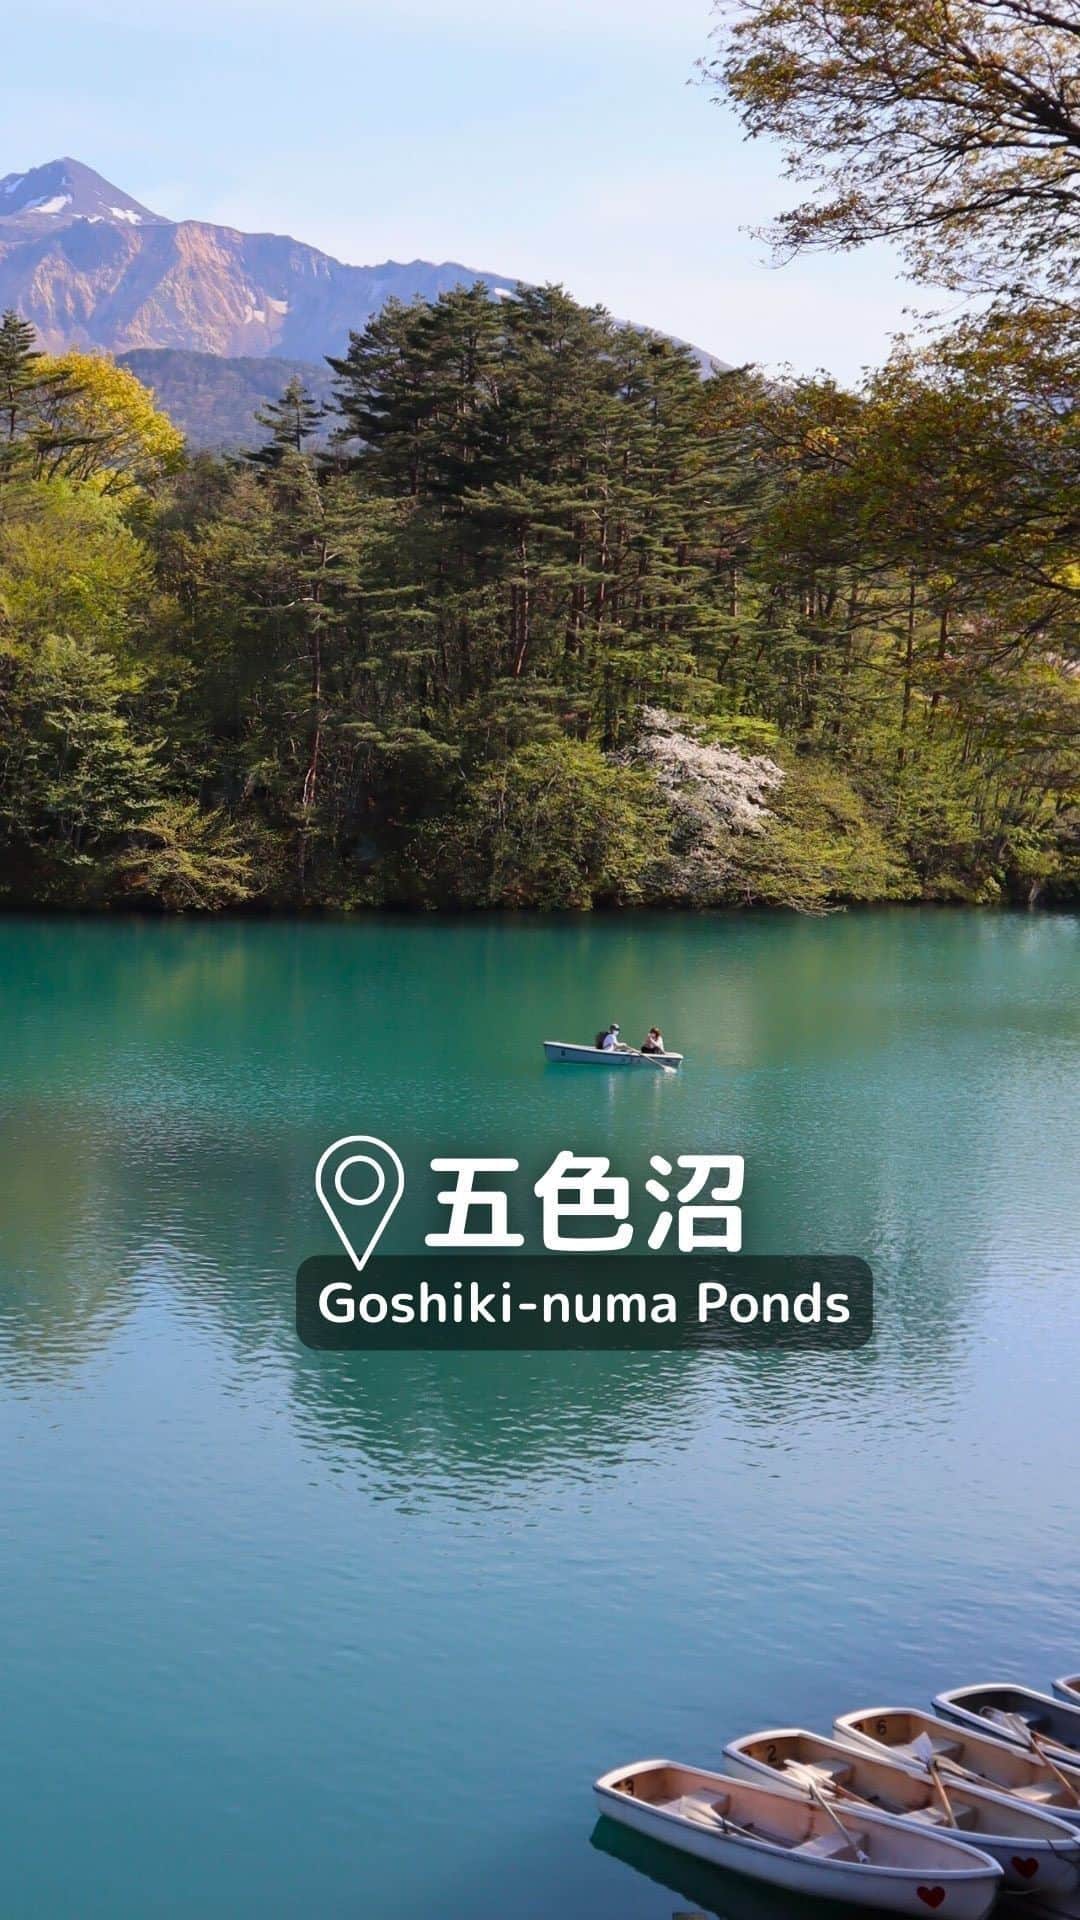 Rediscover Fukushimaのインスタグラム：「A trip to Japan’s mystical Goshiki-numa Ponds is certainly one you won’t forget! 🤩  🙋🌿What are the Goshiki-numa Ponds?🌿  The Goshiki-numa ponds are a group of ponds and lakes at the foot of Mt. Bandai in the northeastern part of Fukushima Prefecture, Japan.  These ponds were formed after a volcanic eruption and they are known for their changing colors due to mineral variations in the soil. 🌋  🙋🌿How do I get to the Goshiki-numa Ponds?🌿  You can get there by car (recommended) or by public transportation.  🚗By car: 30 min drive from Inawashiro Bandaikogen I.C. exit off the Ban-etsu Expressway.  🚆By public transportation: Take the JR Ban-etsu West Line to Inawashiro Station. From there, take the Bandai Toto Bus bound for Urabandai Kogen-eki, and get off at Goshikinuma Iriguchi bus stop (五色沼入口バス停). The bus takes 35 min to reach the Goshiki-numa Ponds.  🙋🌿What can you do at the Goshiki-numa Ponds?🌿  🥾HIKING: The main hiking trail (3.6 km) is beginner-friendly and takes you along the main ponds.  🚣PADDLING: Rent a boat and explore the volcanic waters up close.  🍦RELAXING: Sit down with a coffee or ice-cream at the food stand there and just take in the views and the fresh air.  ℹ️For more information, check out our posts about the Goshiki-numa Ponds (link in our stories)! If you have any questions, please let us know in the comments.  🔖Don’t forget to save this post for your next visit! Are you visiting the ponds this year?  #goshikinuma #urabandai #japan #visitjapanjp #tohoku #springinjapan #summerinjapan #instagood #instatravel #beautifuldestinations #beautiful #japantravel #japantrip #goshikinumaponds #fukushima #visitfukushima #japão #japan #japanese #福岛 #日本旅游 #ญี่ปุ่น #เที่ยวญี่ปุ่น #五色沼 #福島観光」